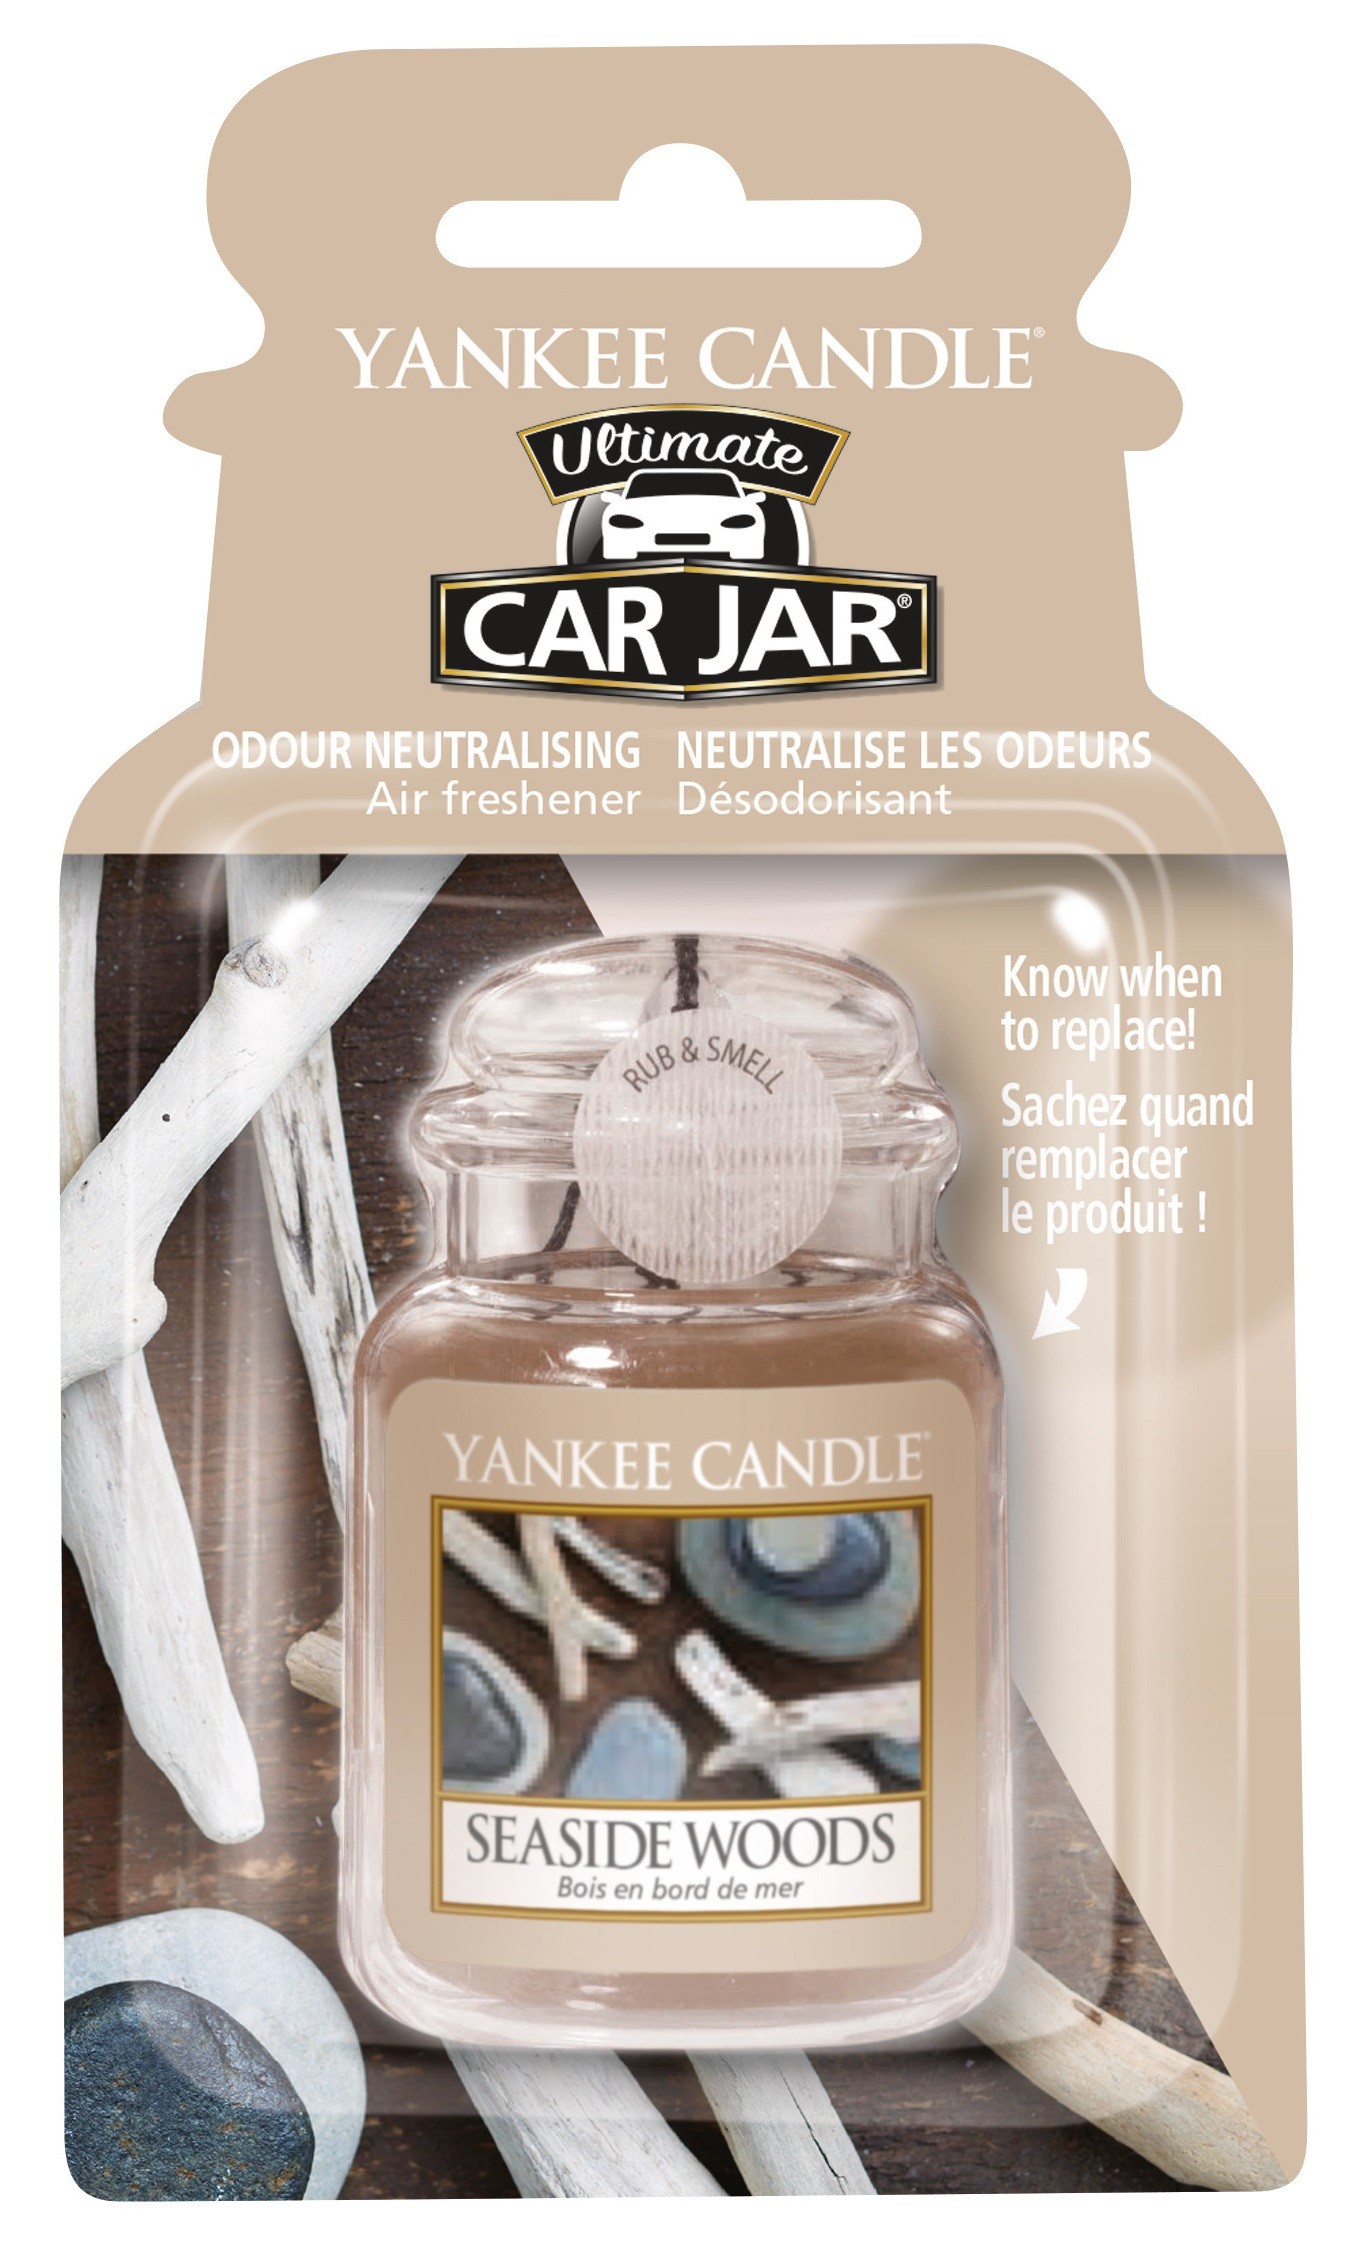 profumo per la macchina, profumatore auto della yankee candle